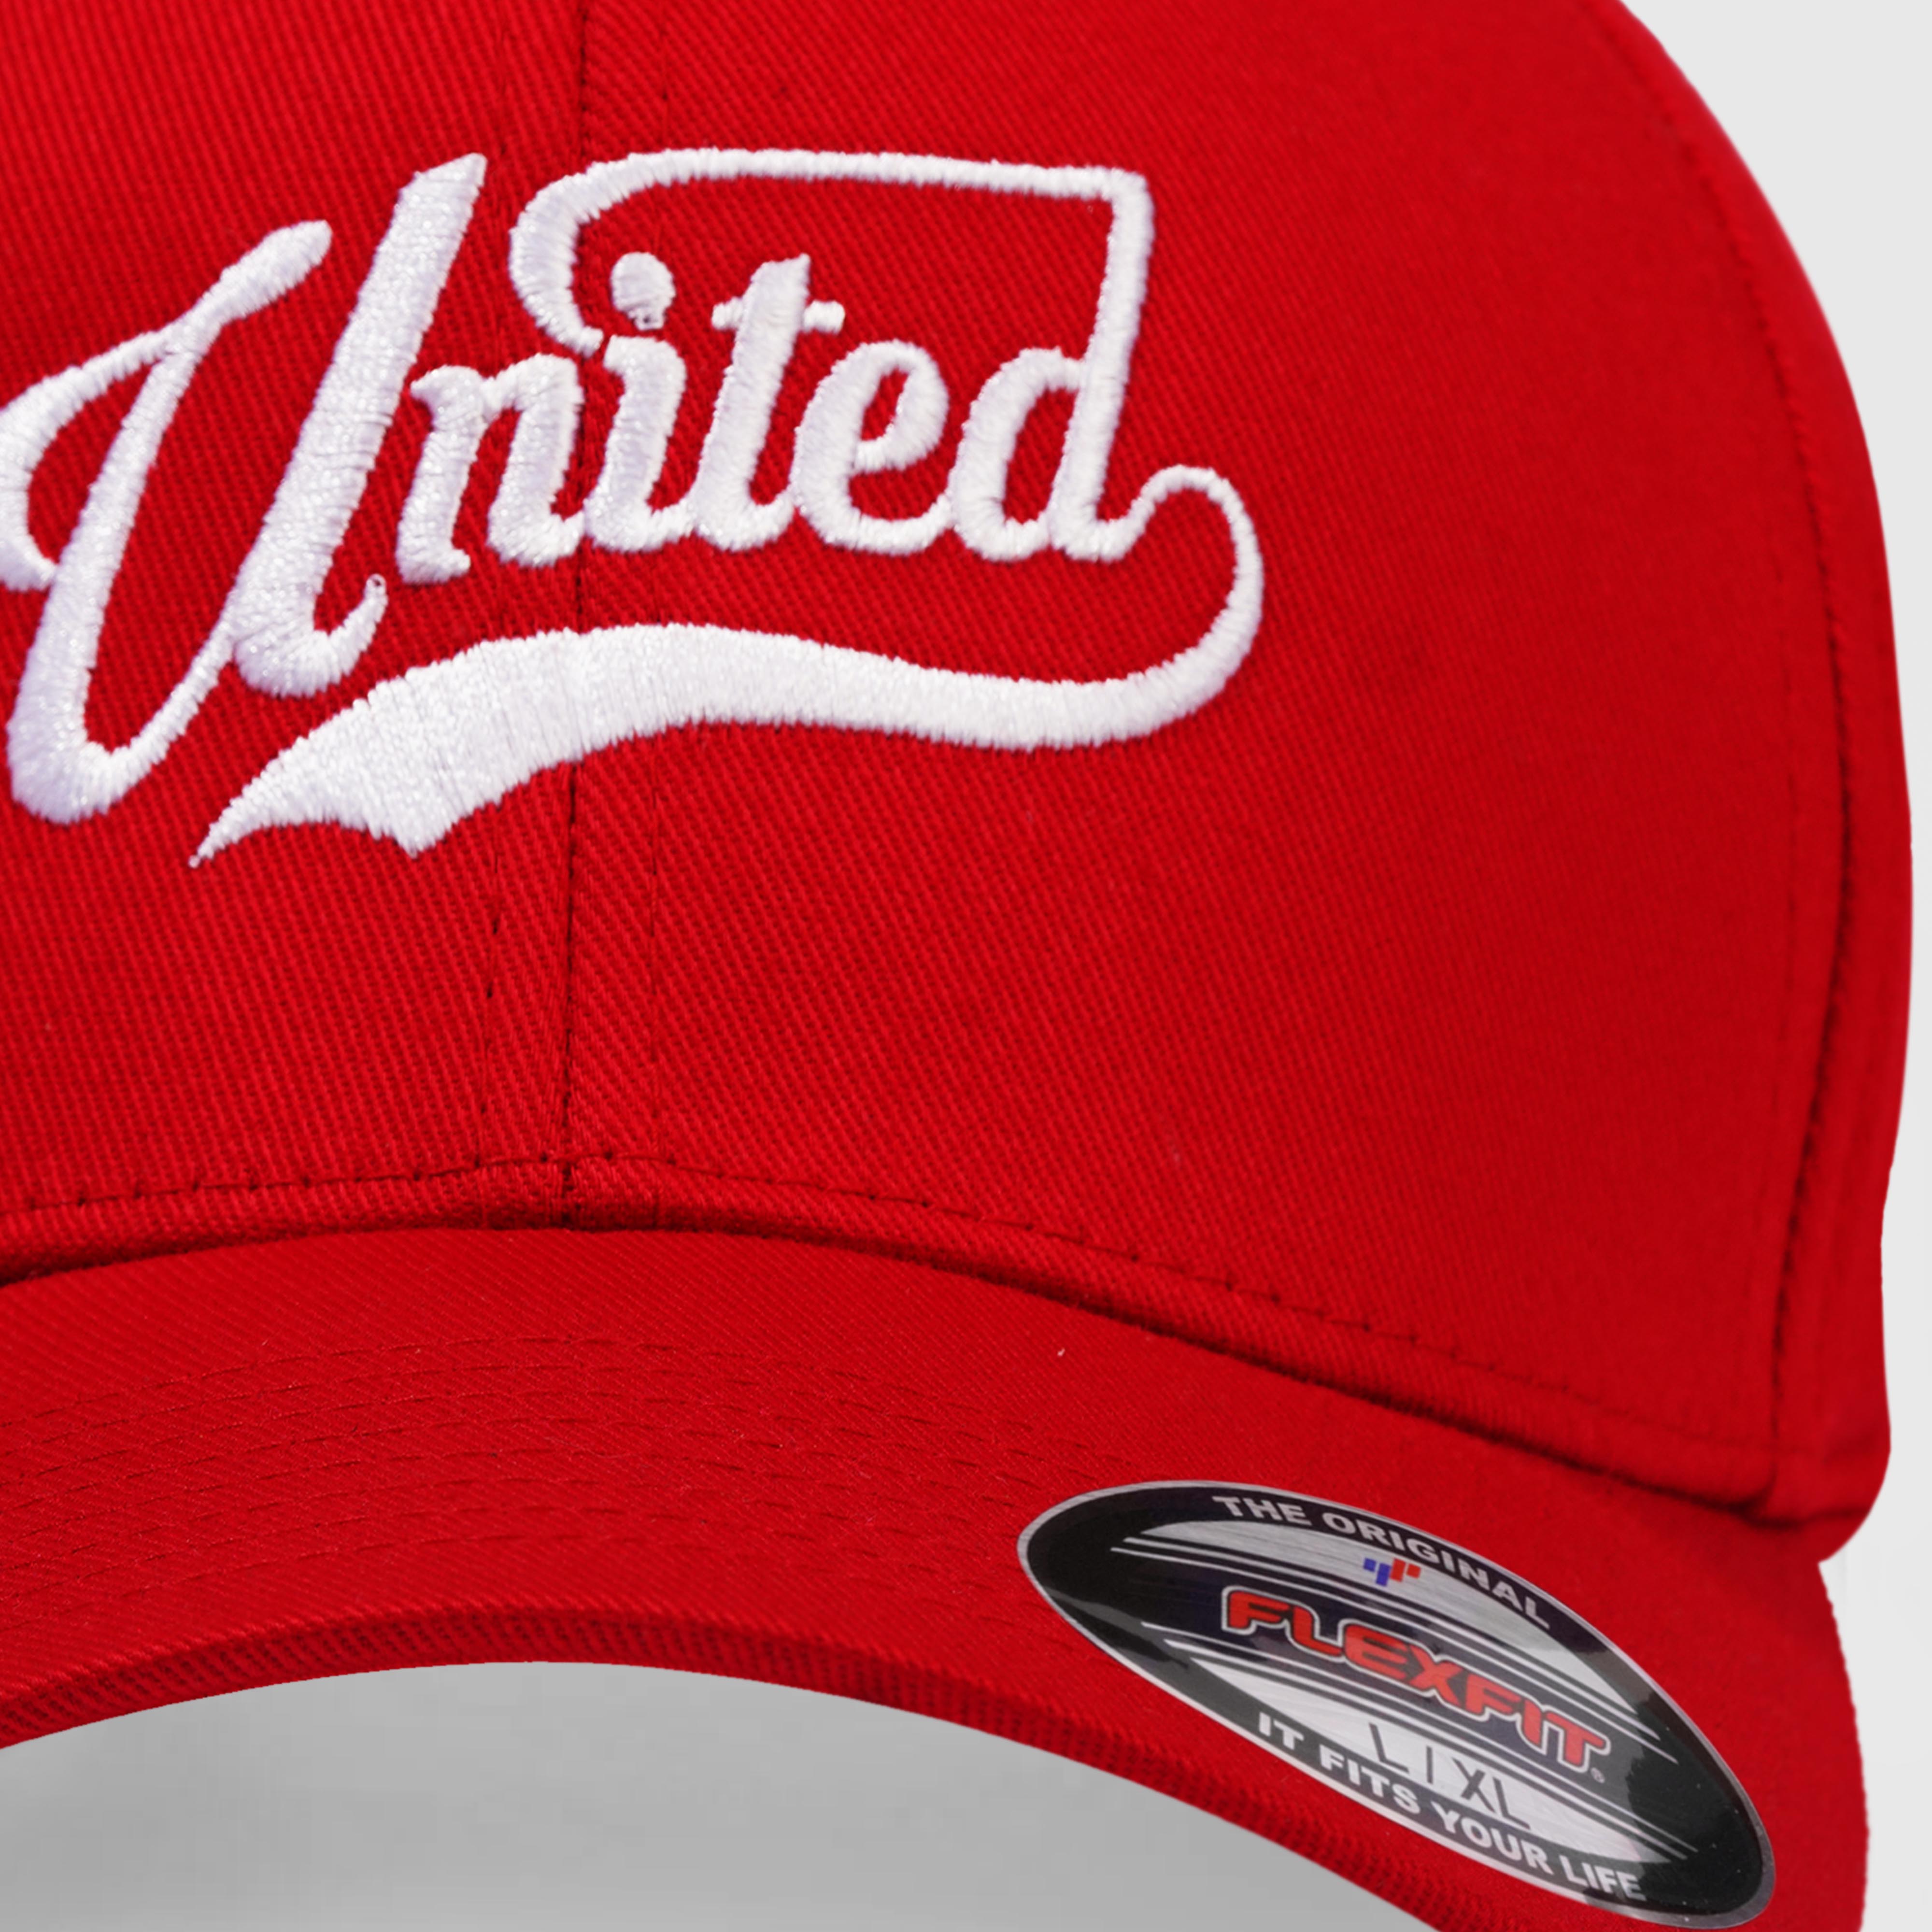 United Mid Profile Cap (Red)